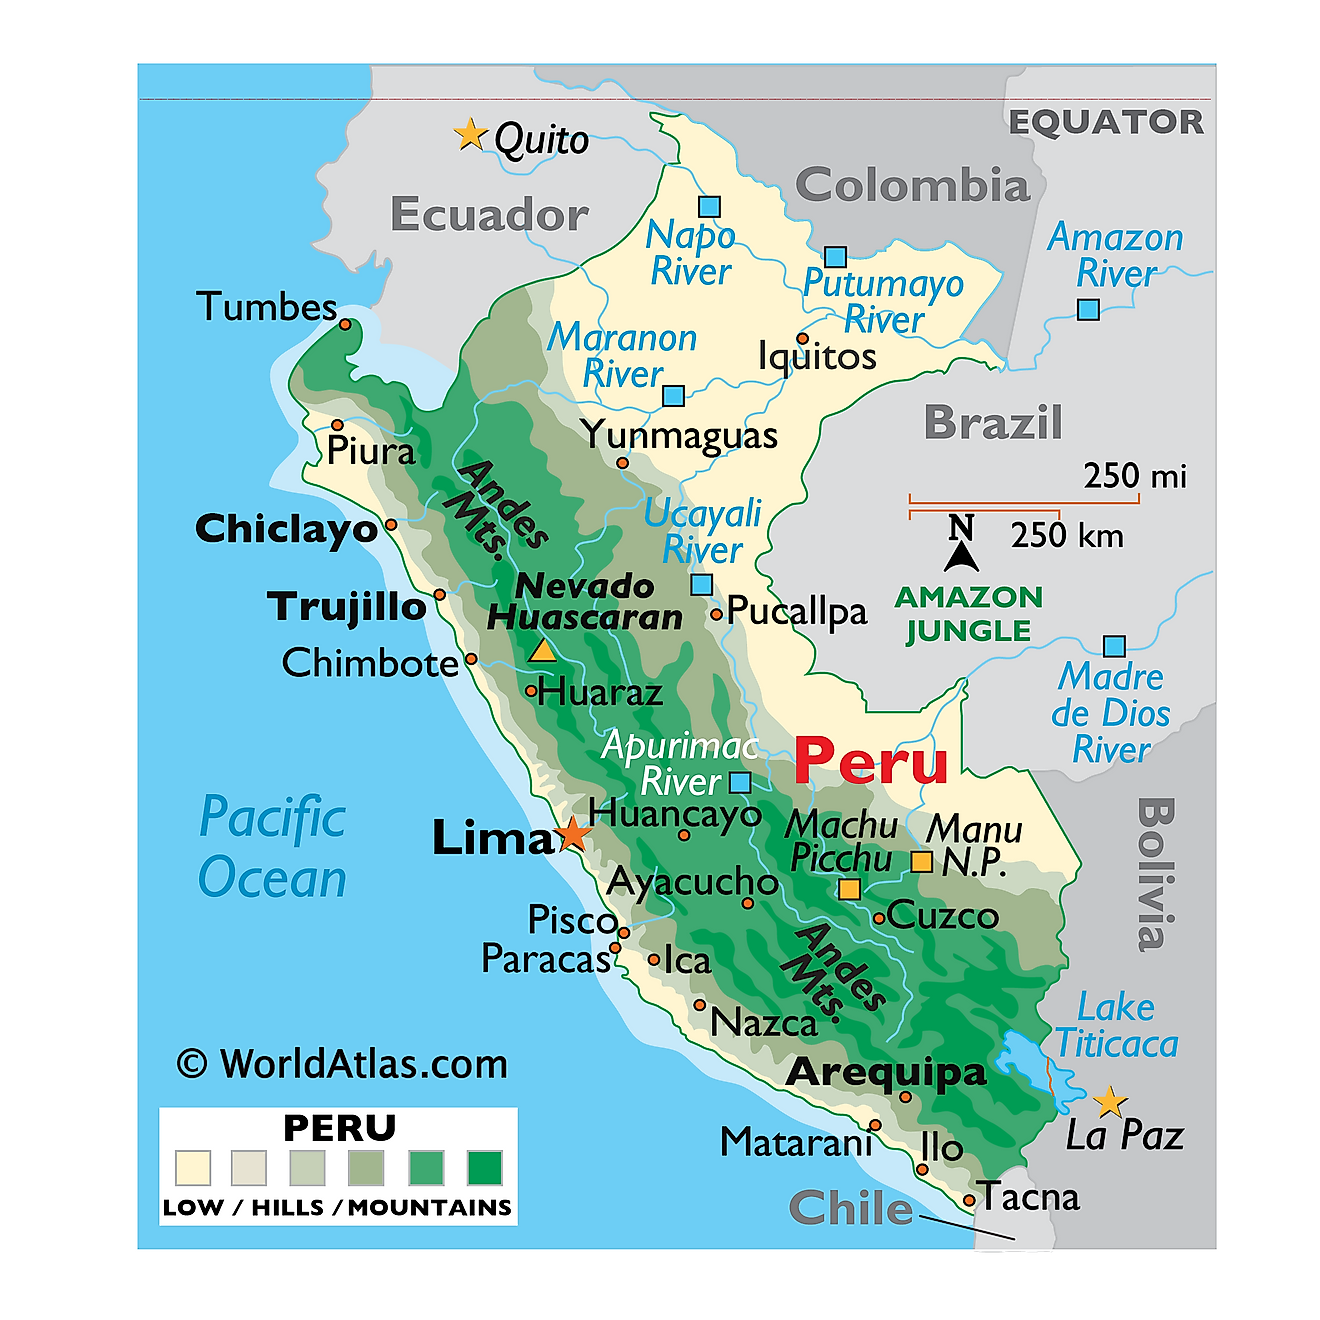 Mapa Físico del Perú mostrando relieve, montañas, ríos principales, Lago Titicaca, ciudades importantes, países vecinos, etc.